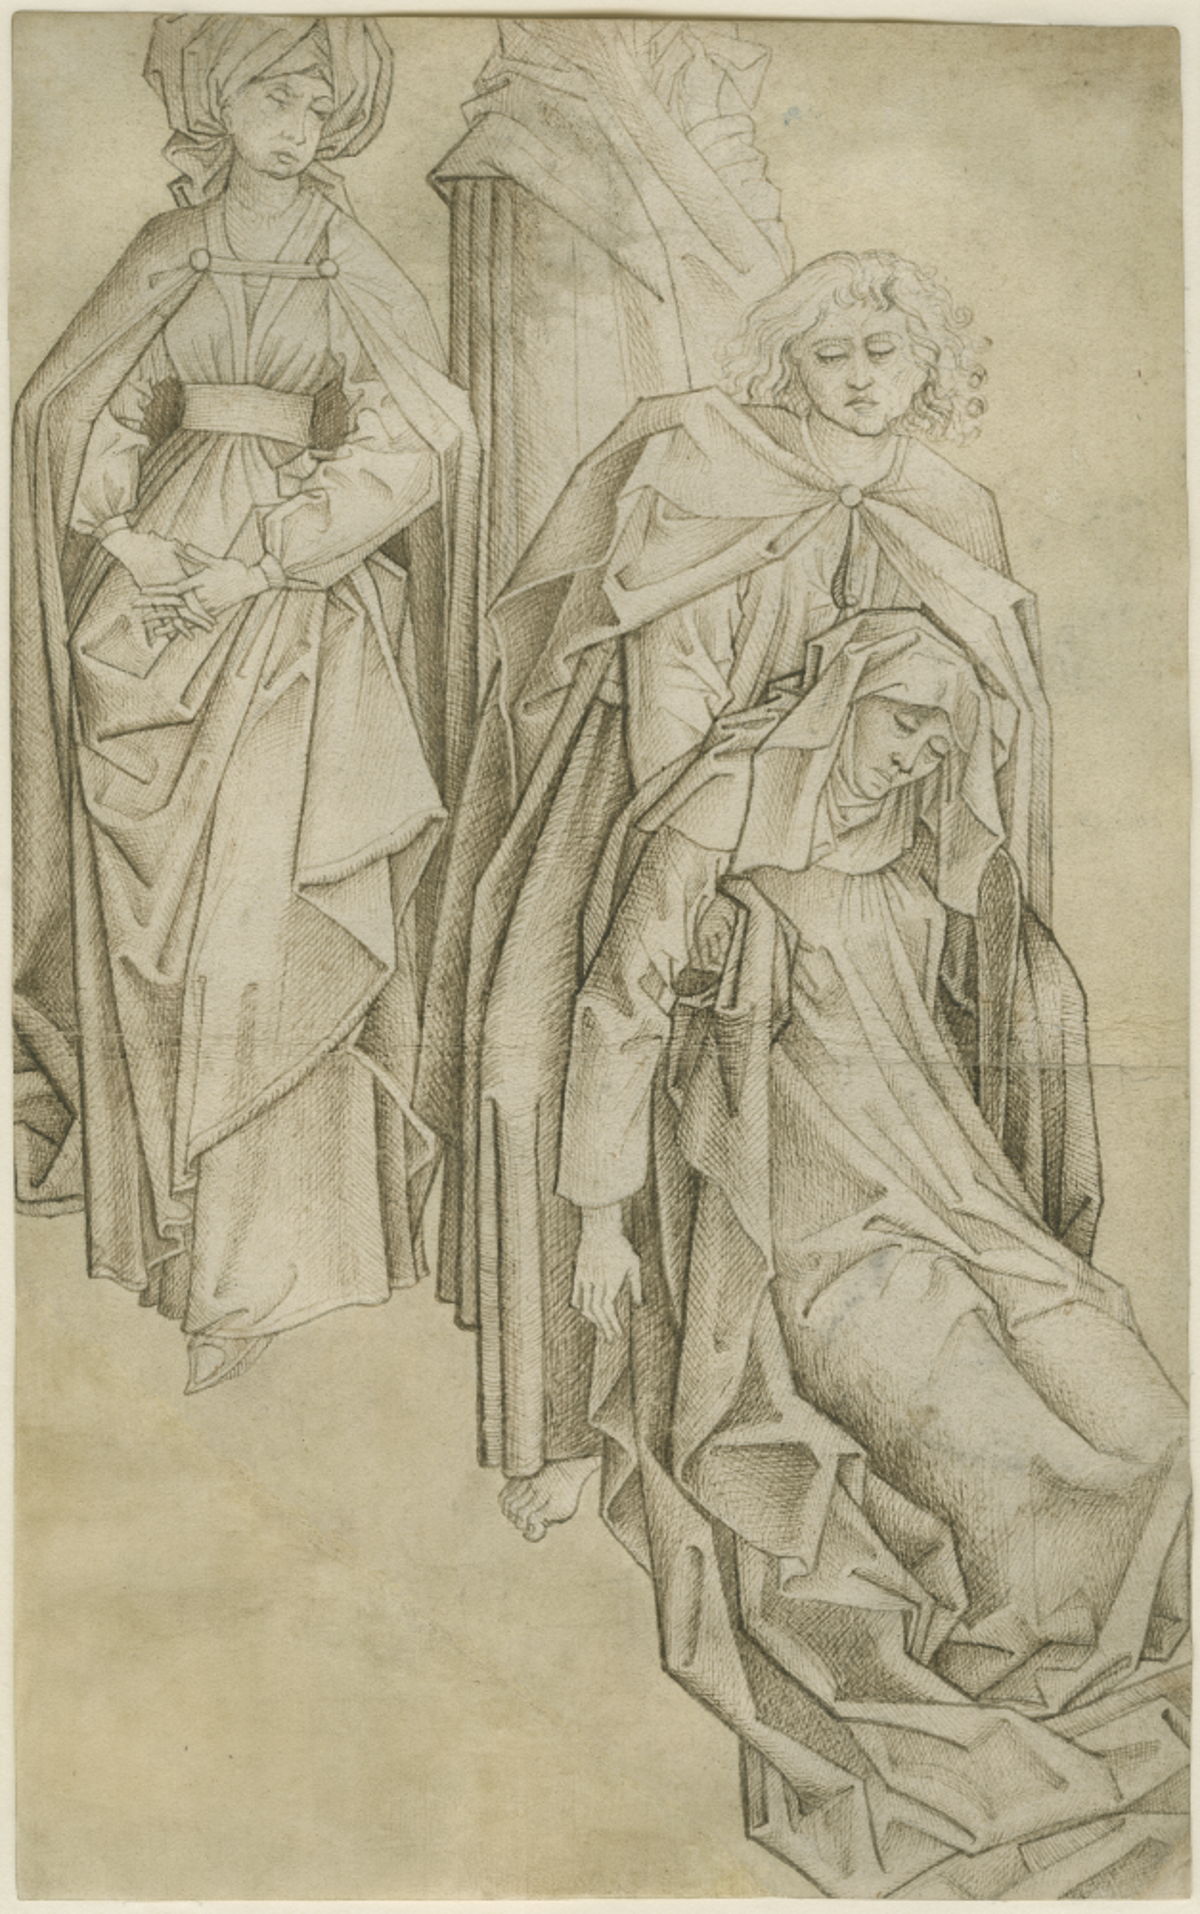 Omgeving van Rogier van der Weyden, 'Bezwijming van de heilige Maagd en twee Maria’s', circa 1458-1469, tekening, inkt op papier, 332 x 208 mm, collectie M Leuven - CC0, foto M Leuven